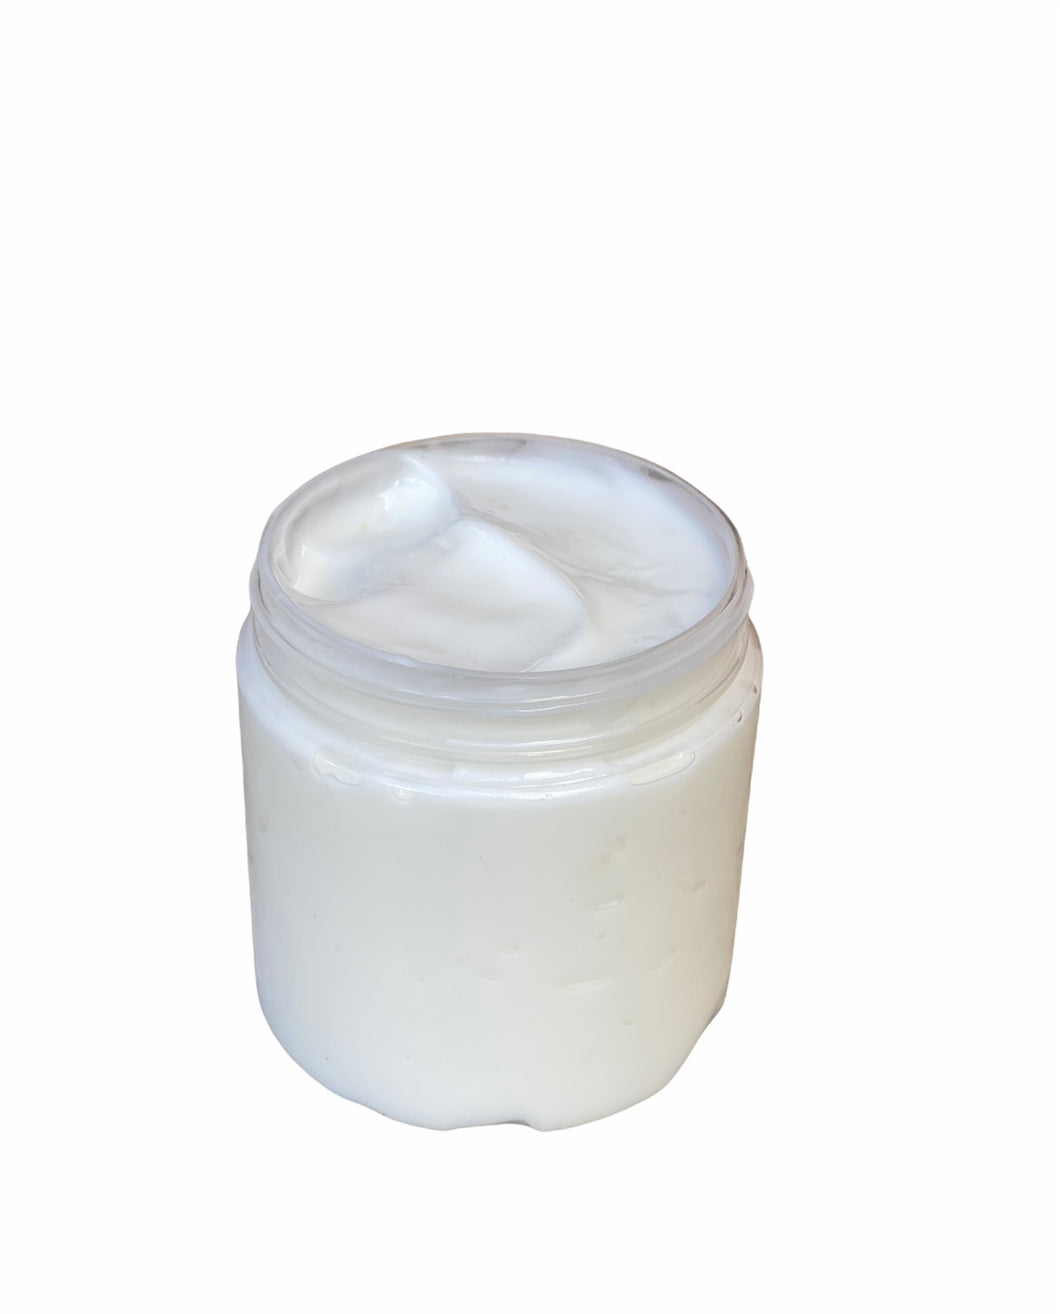 Diorr Face Cream